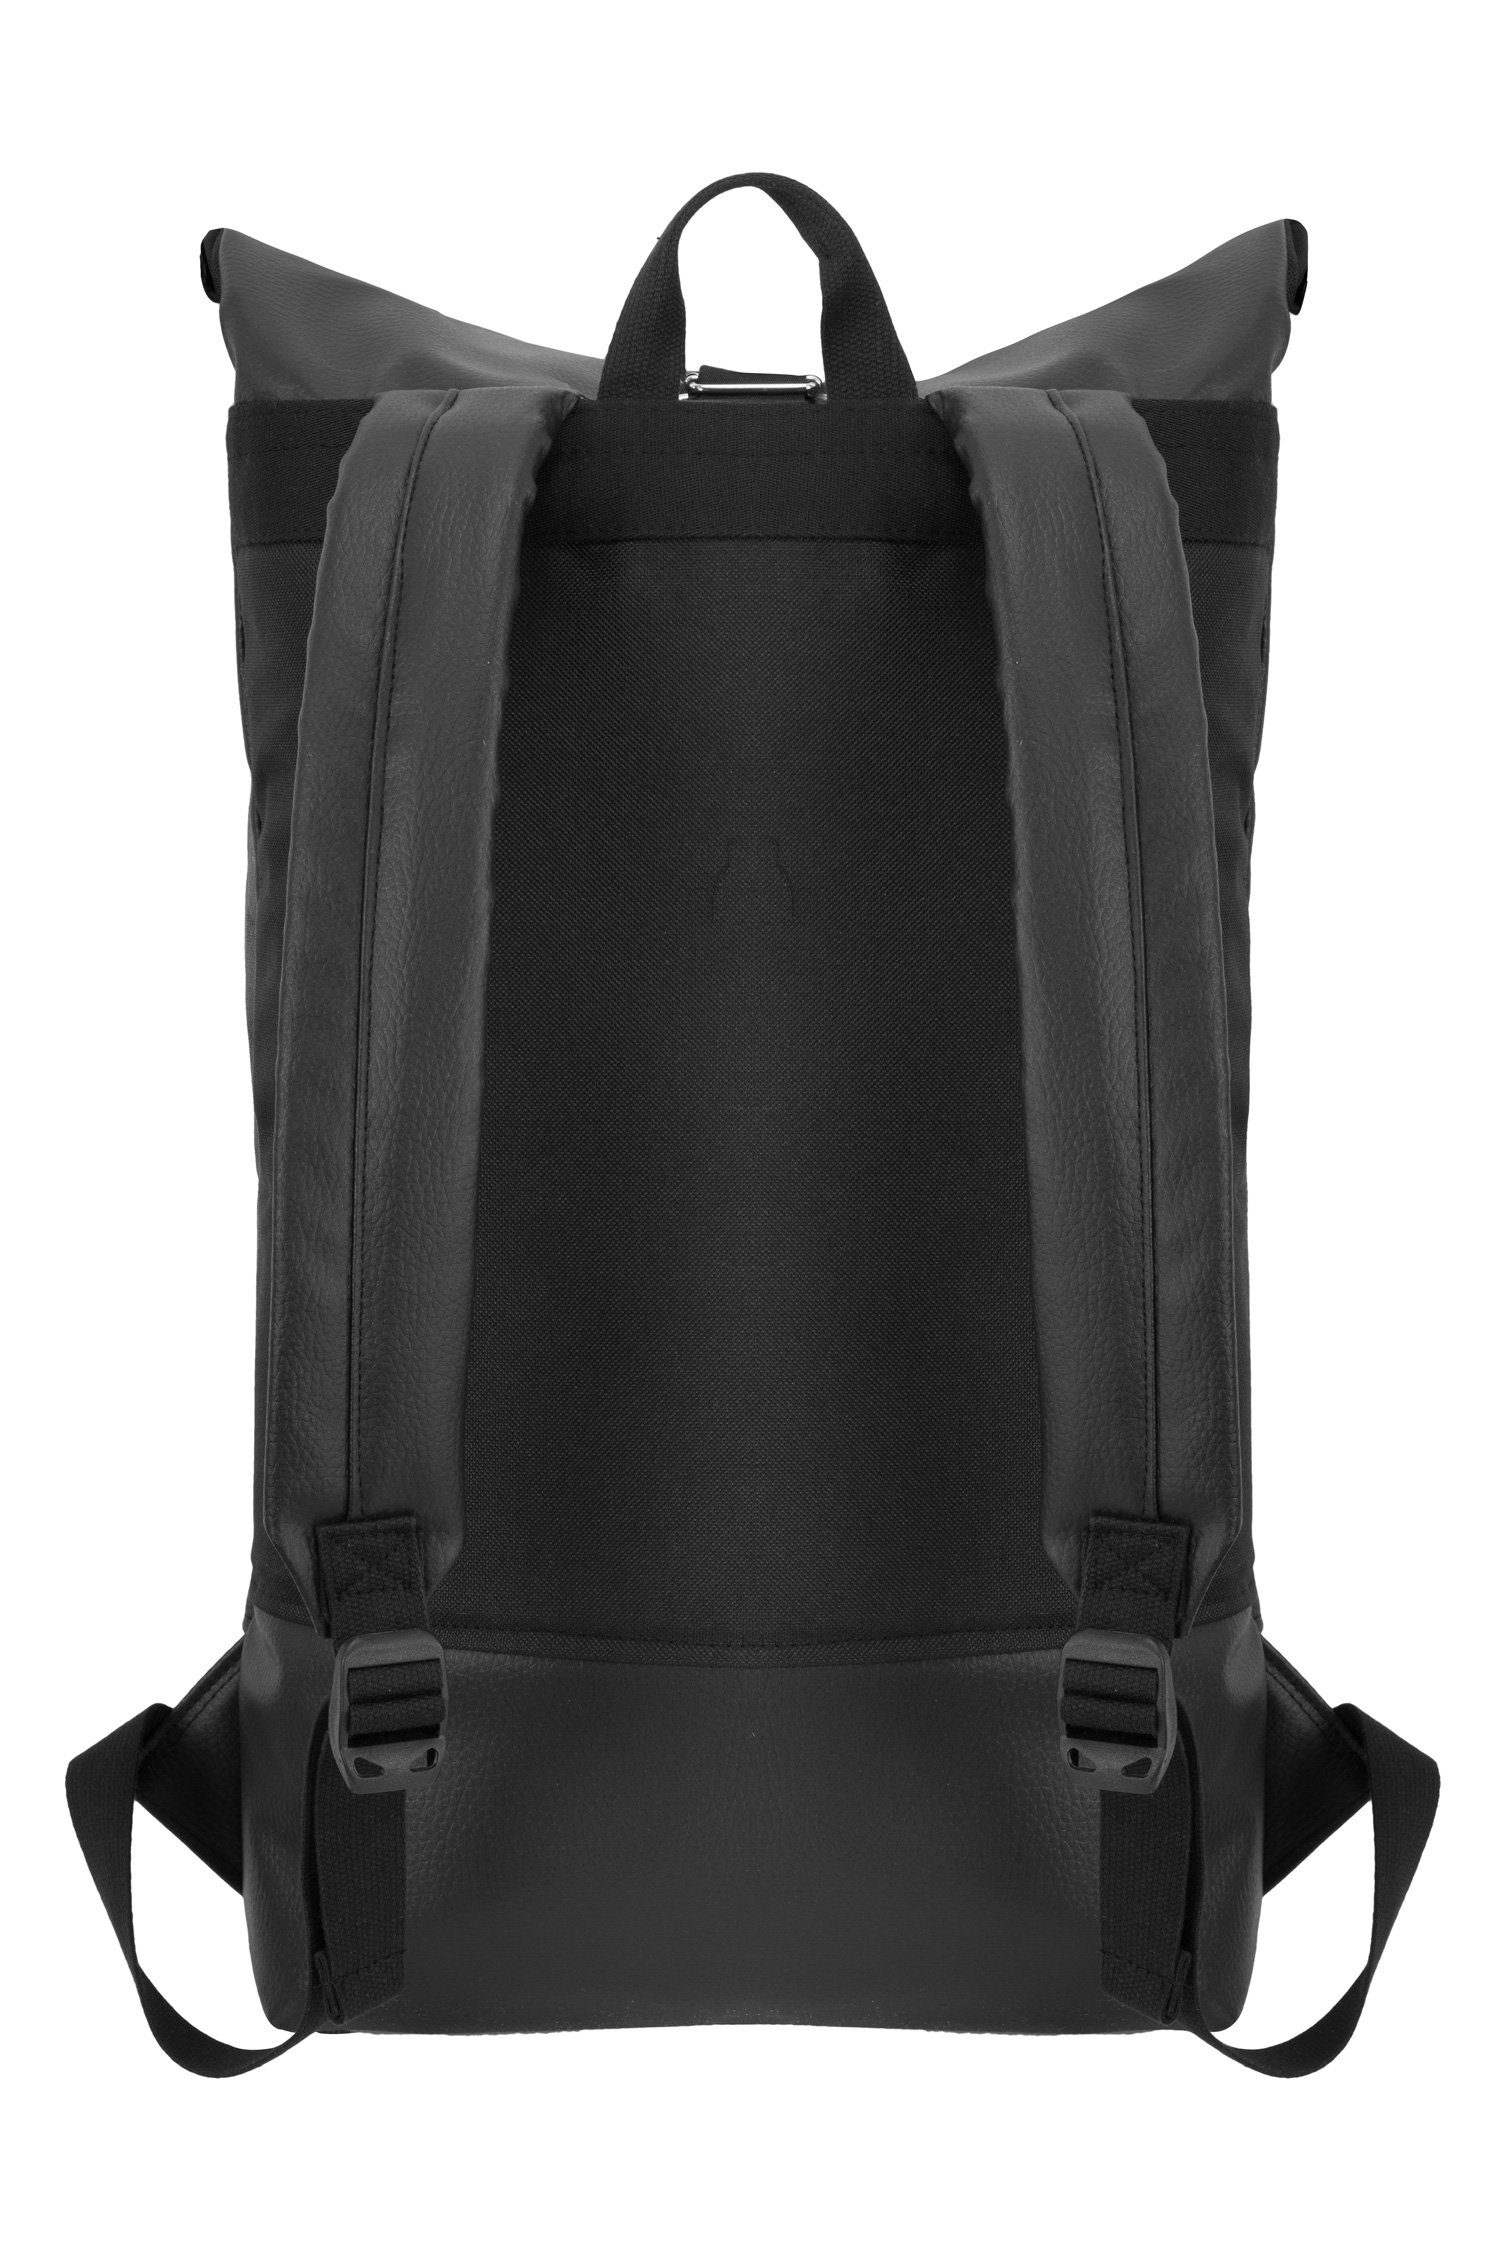 Tagesrucksack verstellbare Manufaktur13 Vegan Roll-Top Black Backpack Leather Gurte Rucksack mit Rollverschluss, - wasserdicht/wasserabweisend, Out